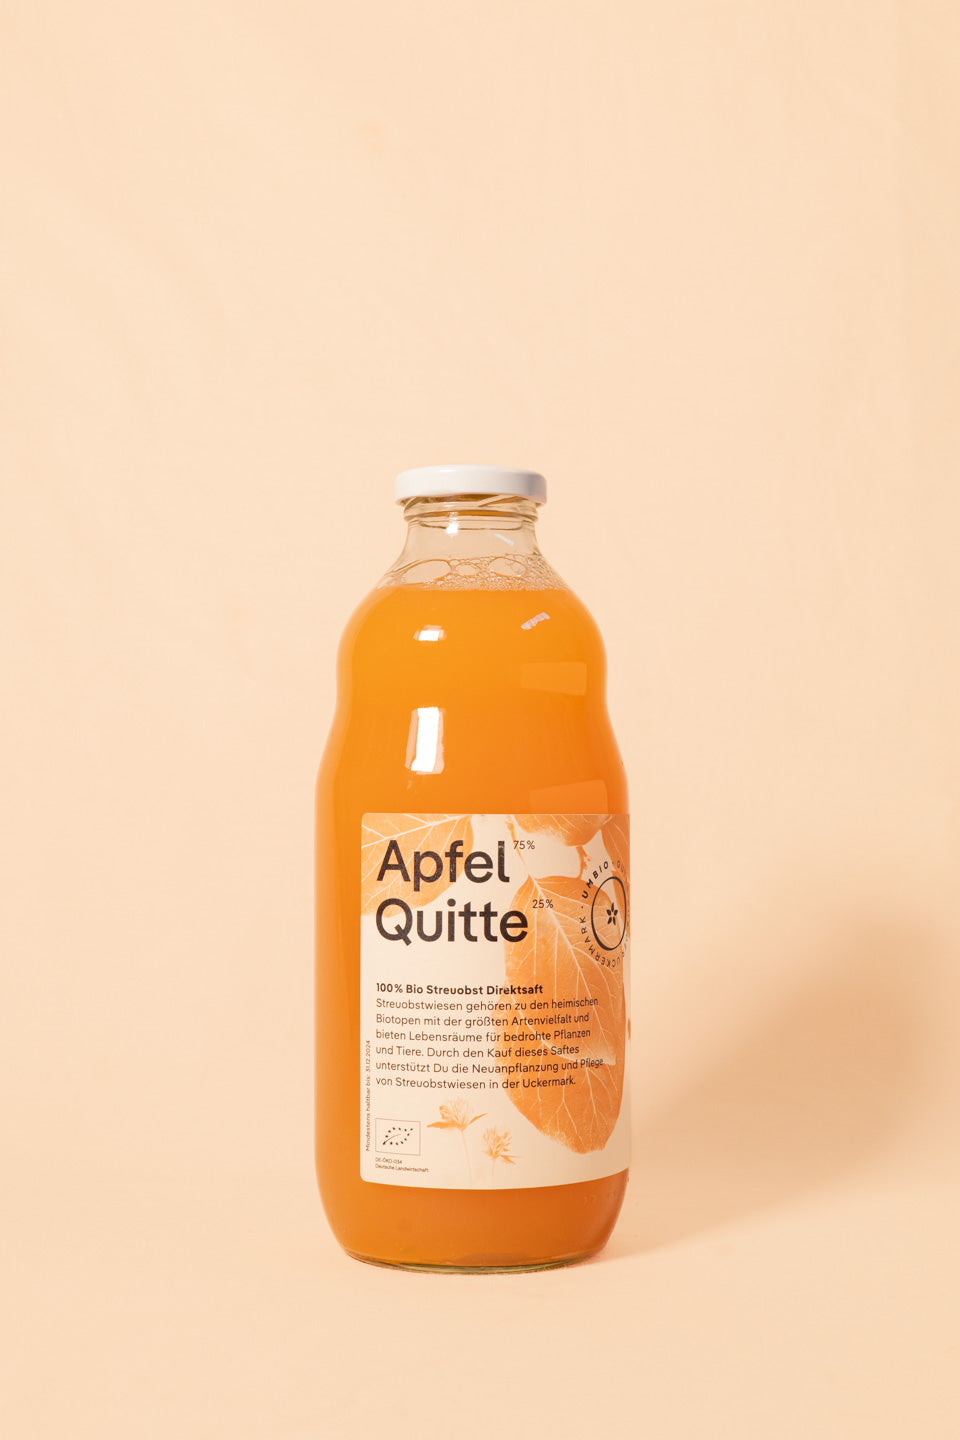 Umbio | Apple and Quince Juice from Uckermarkt 1L